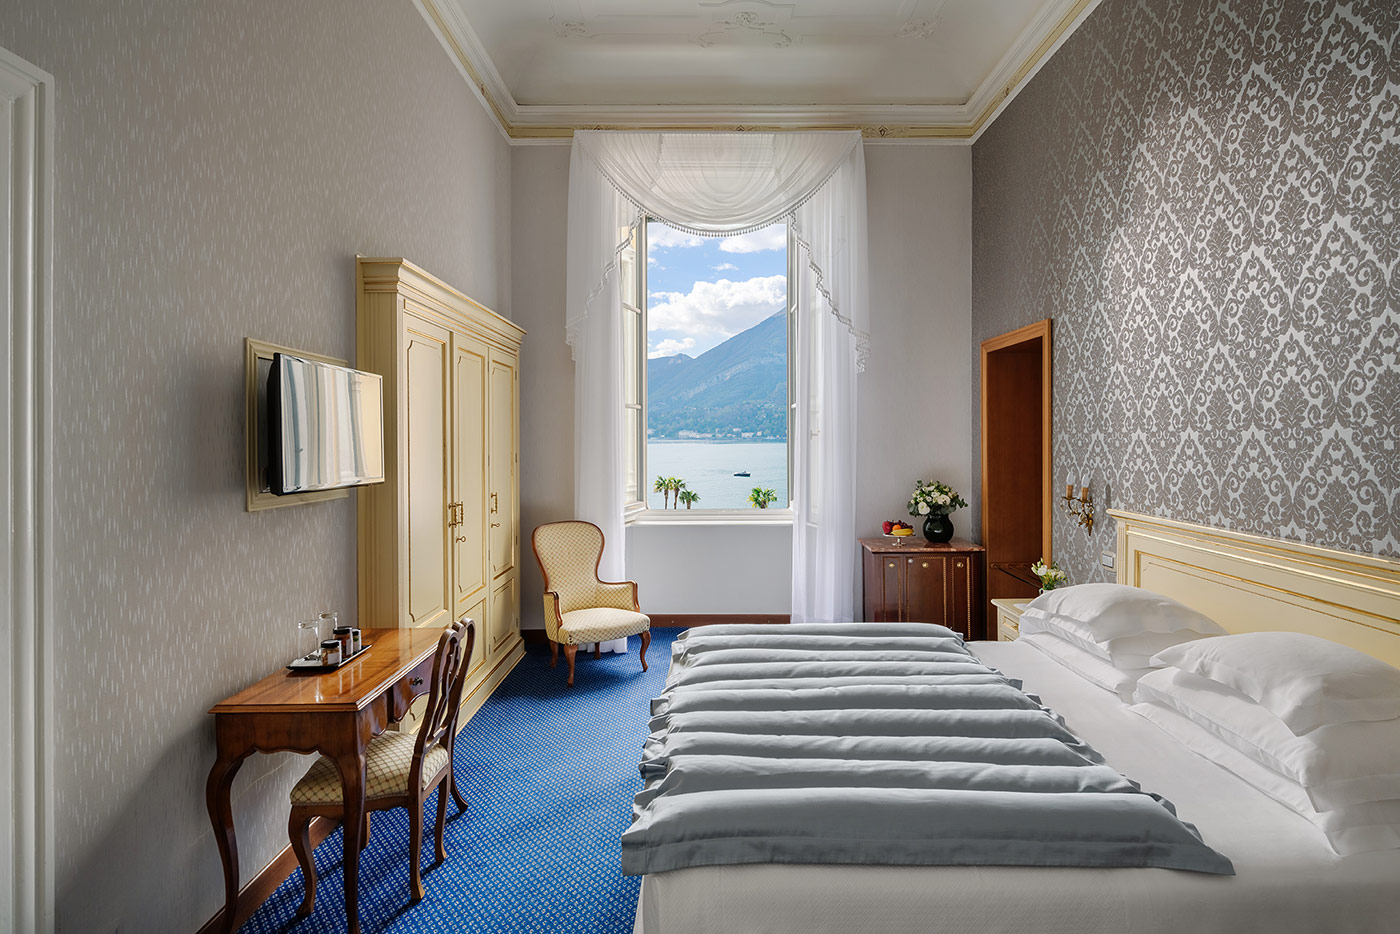  1  - Grand Hotel Villa Serbelloni